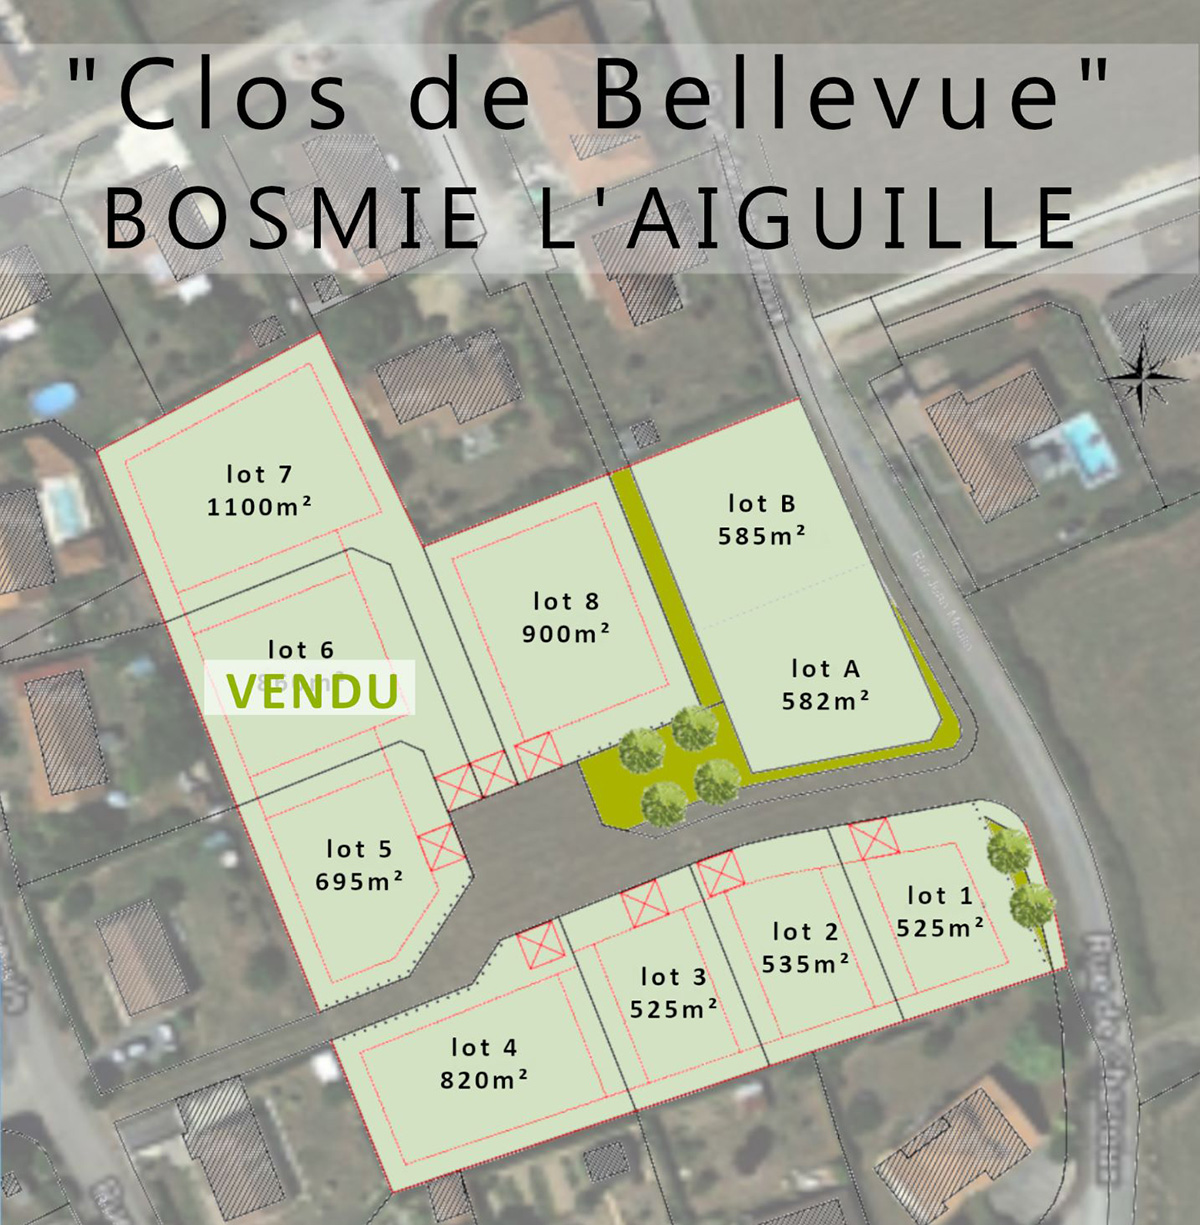 Programme privé “Clos de Bellevue“, Bosmie l'Aiguille